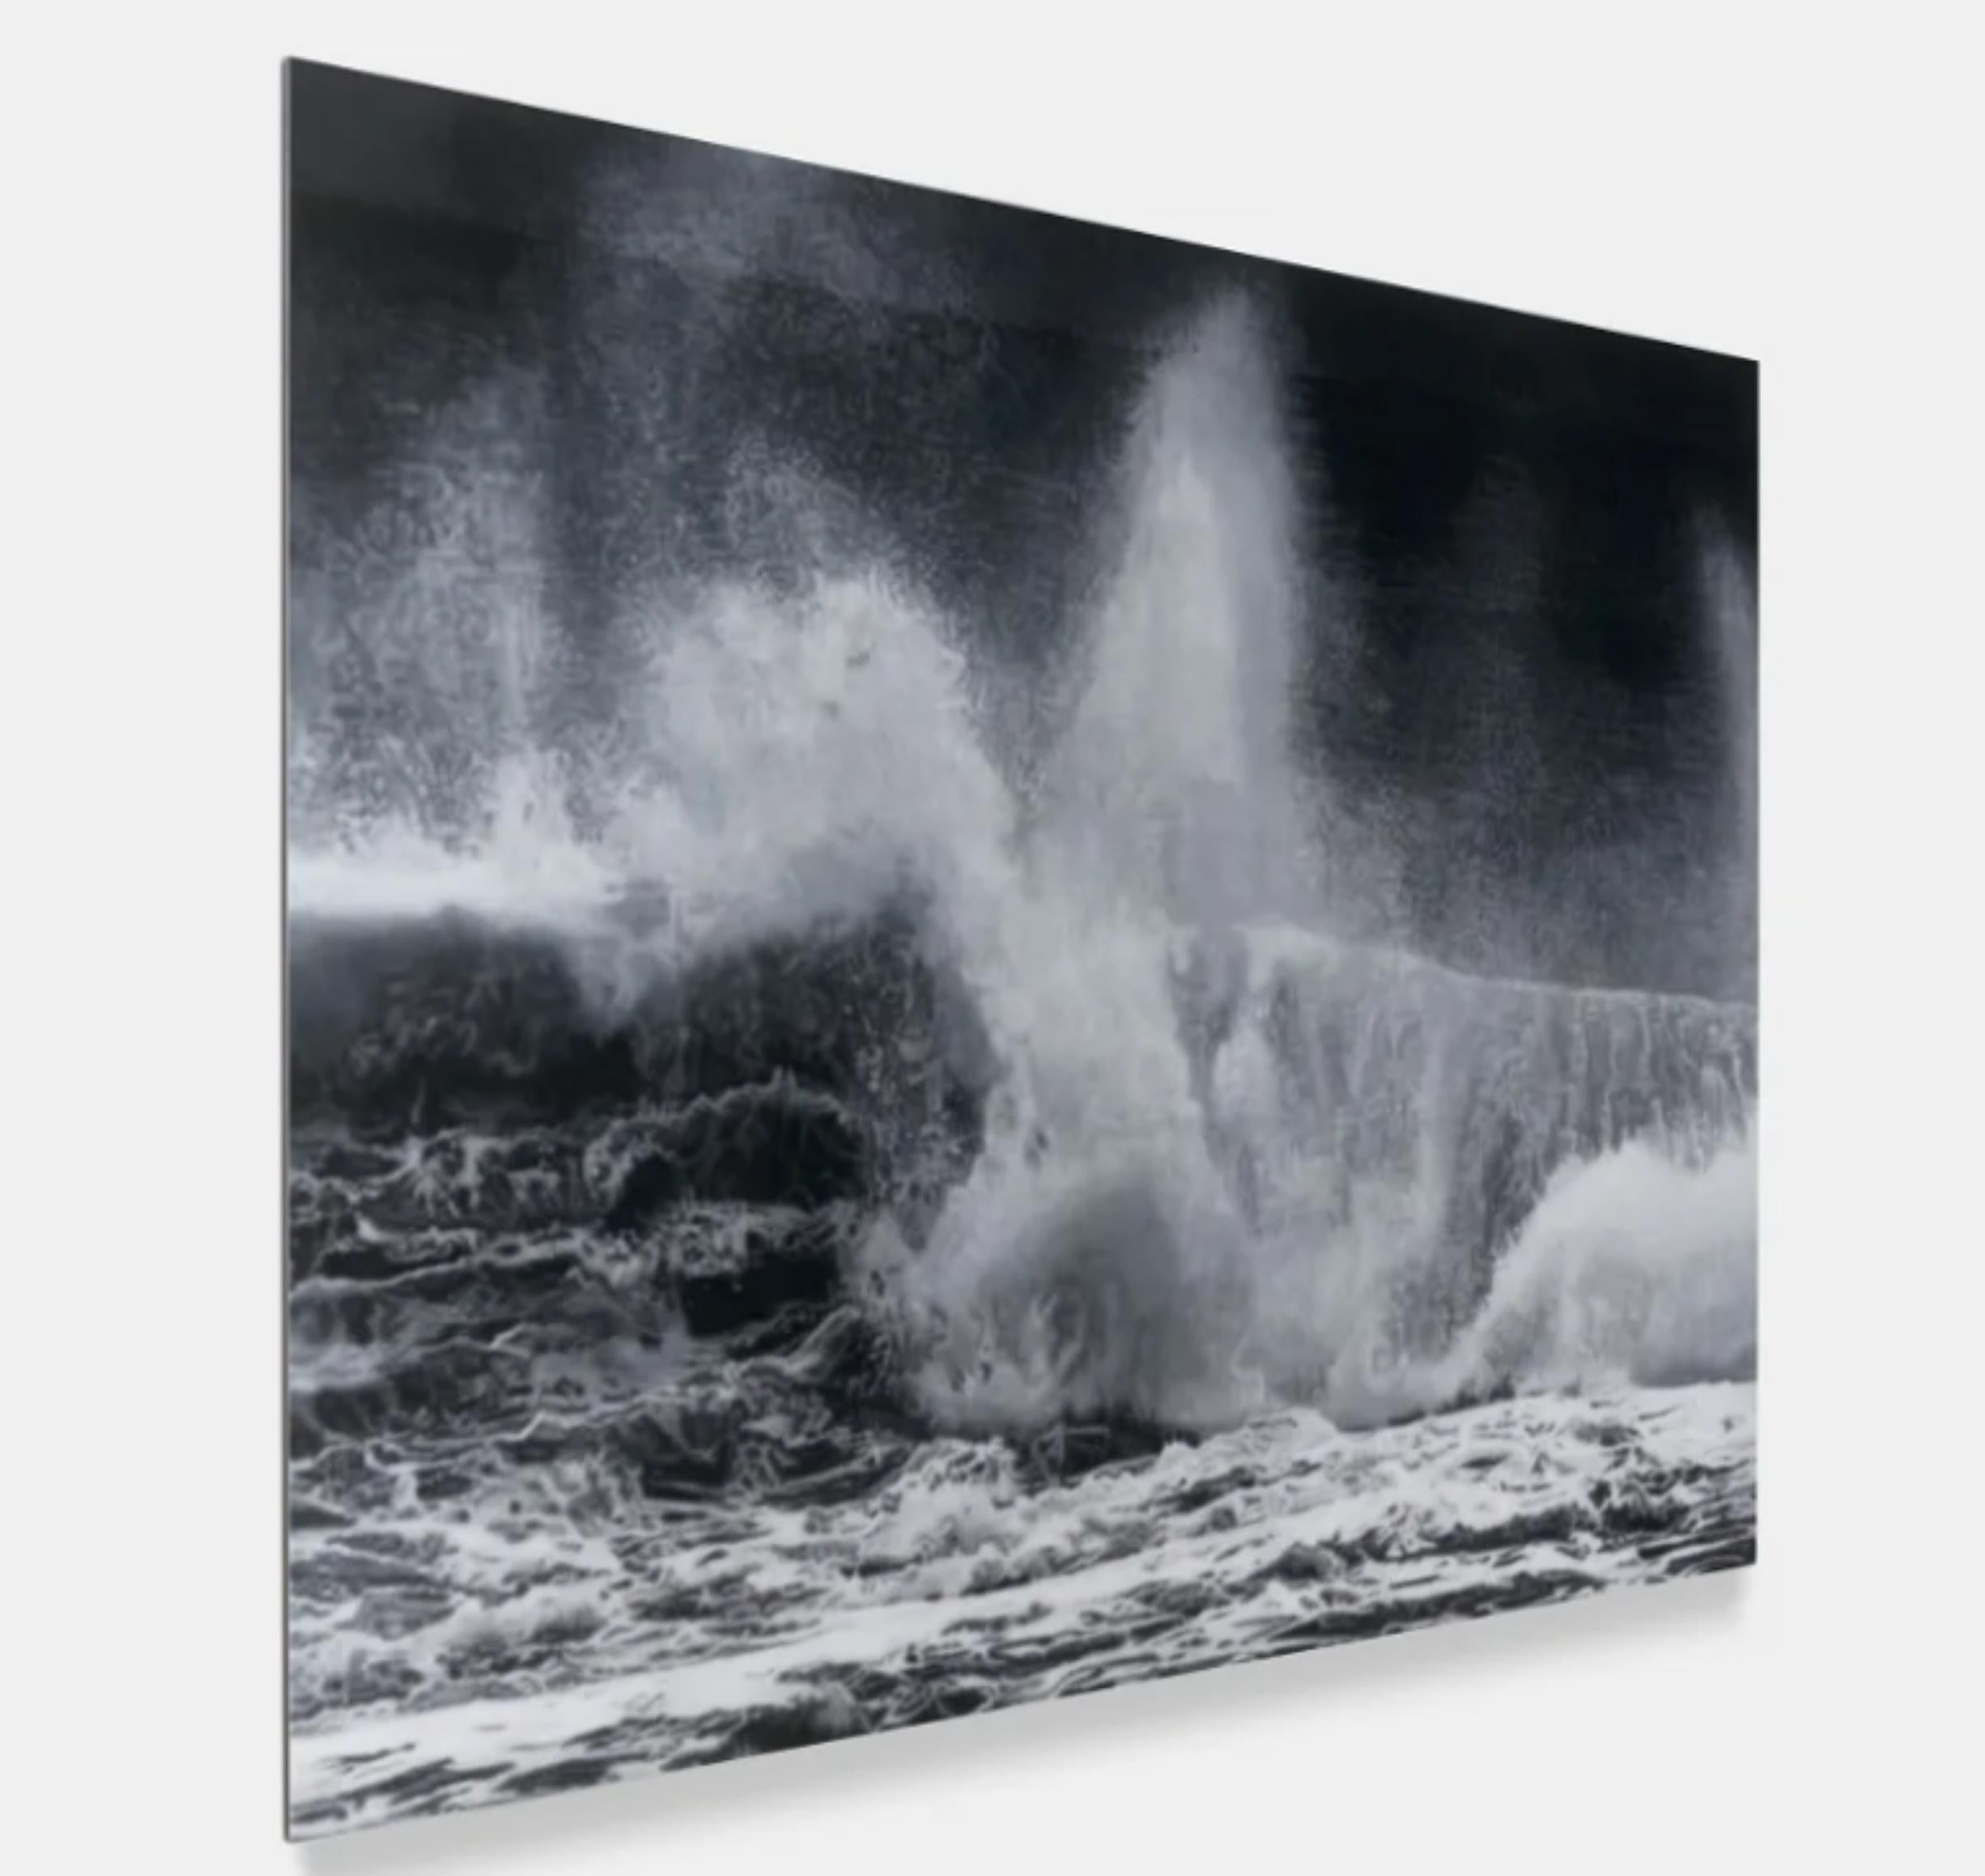 Colliding, H13-9, von Where the Land Meets the Sea – Print von Damien Hirst